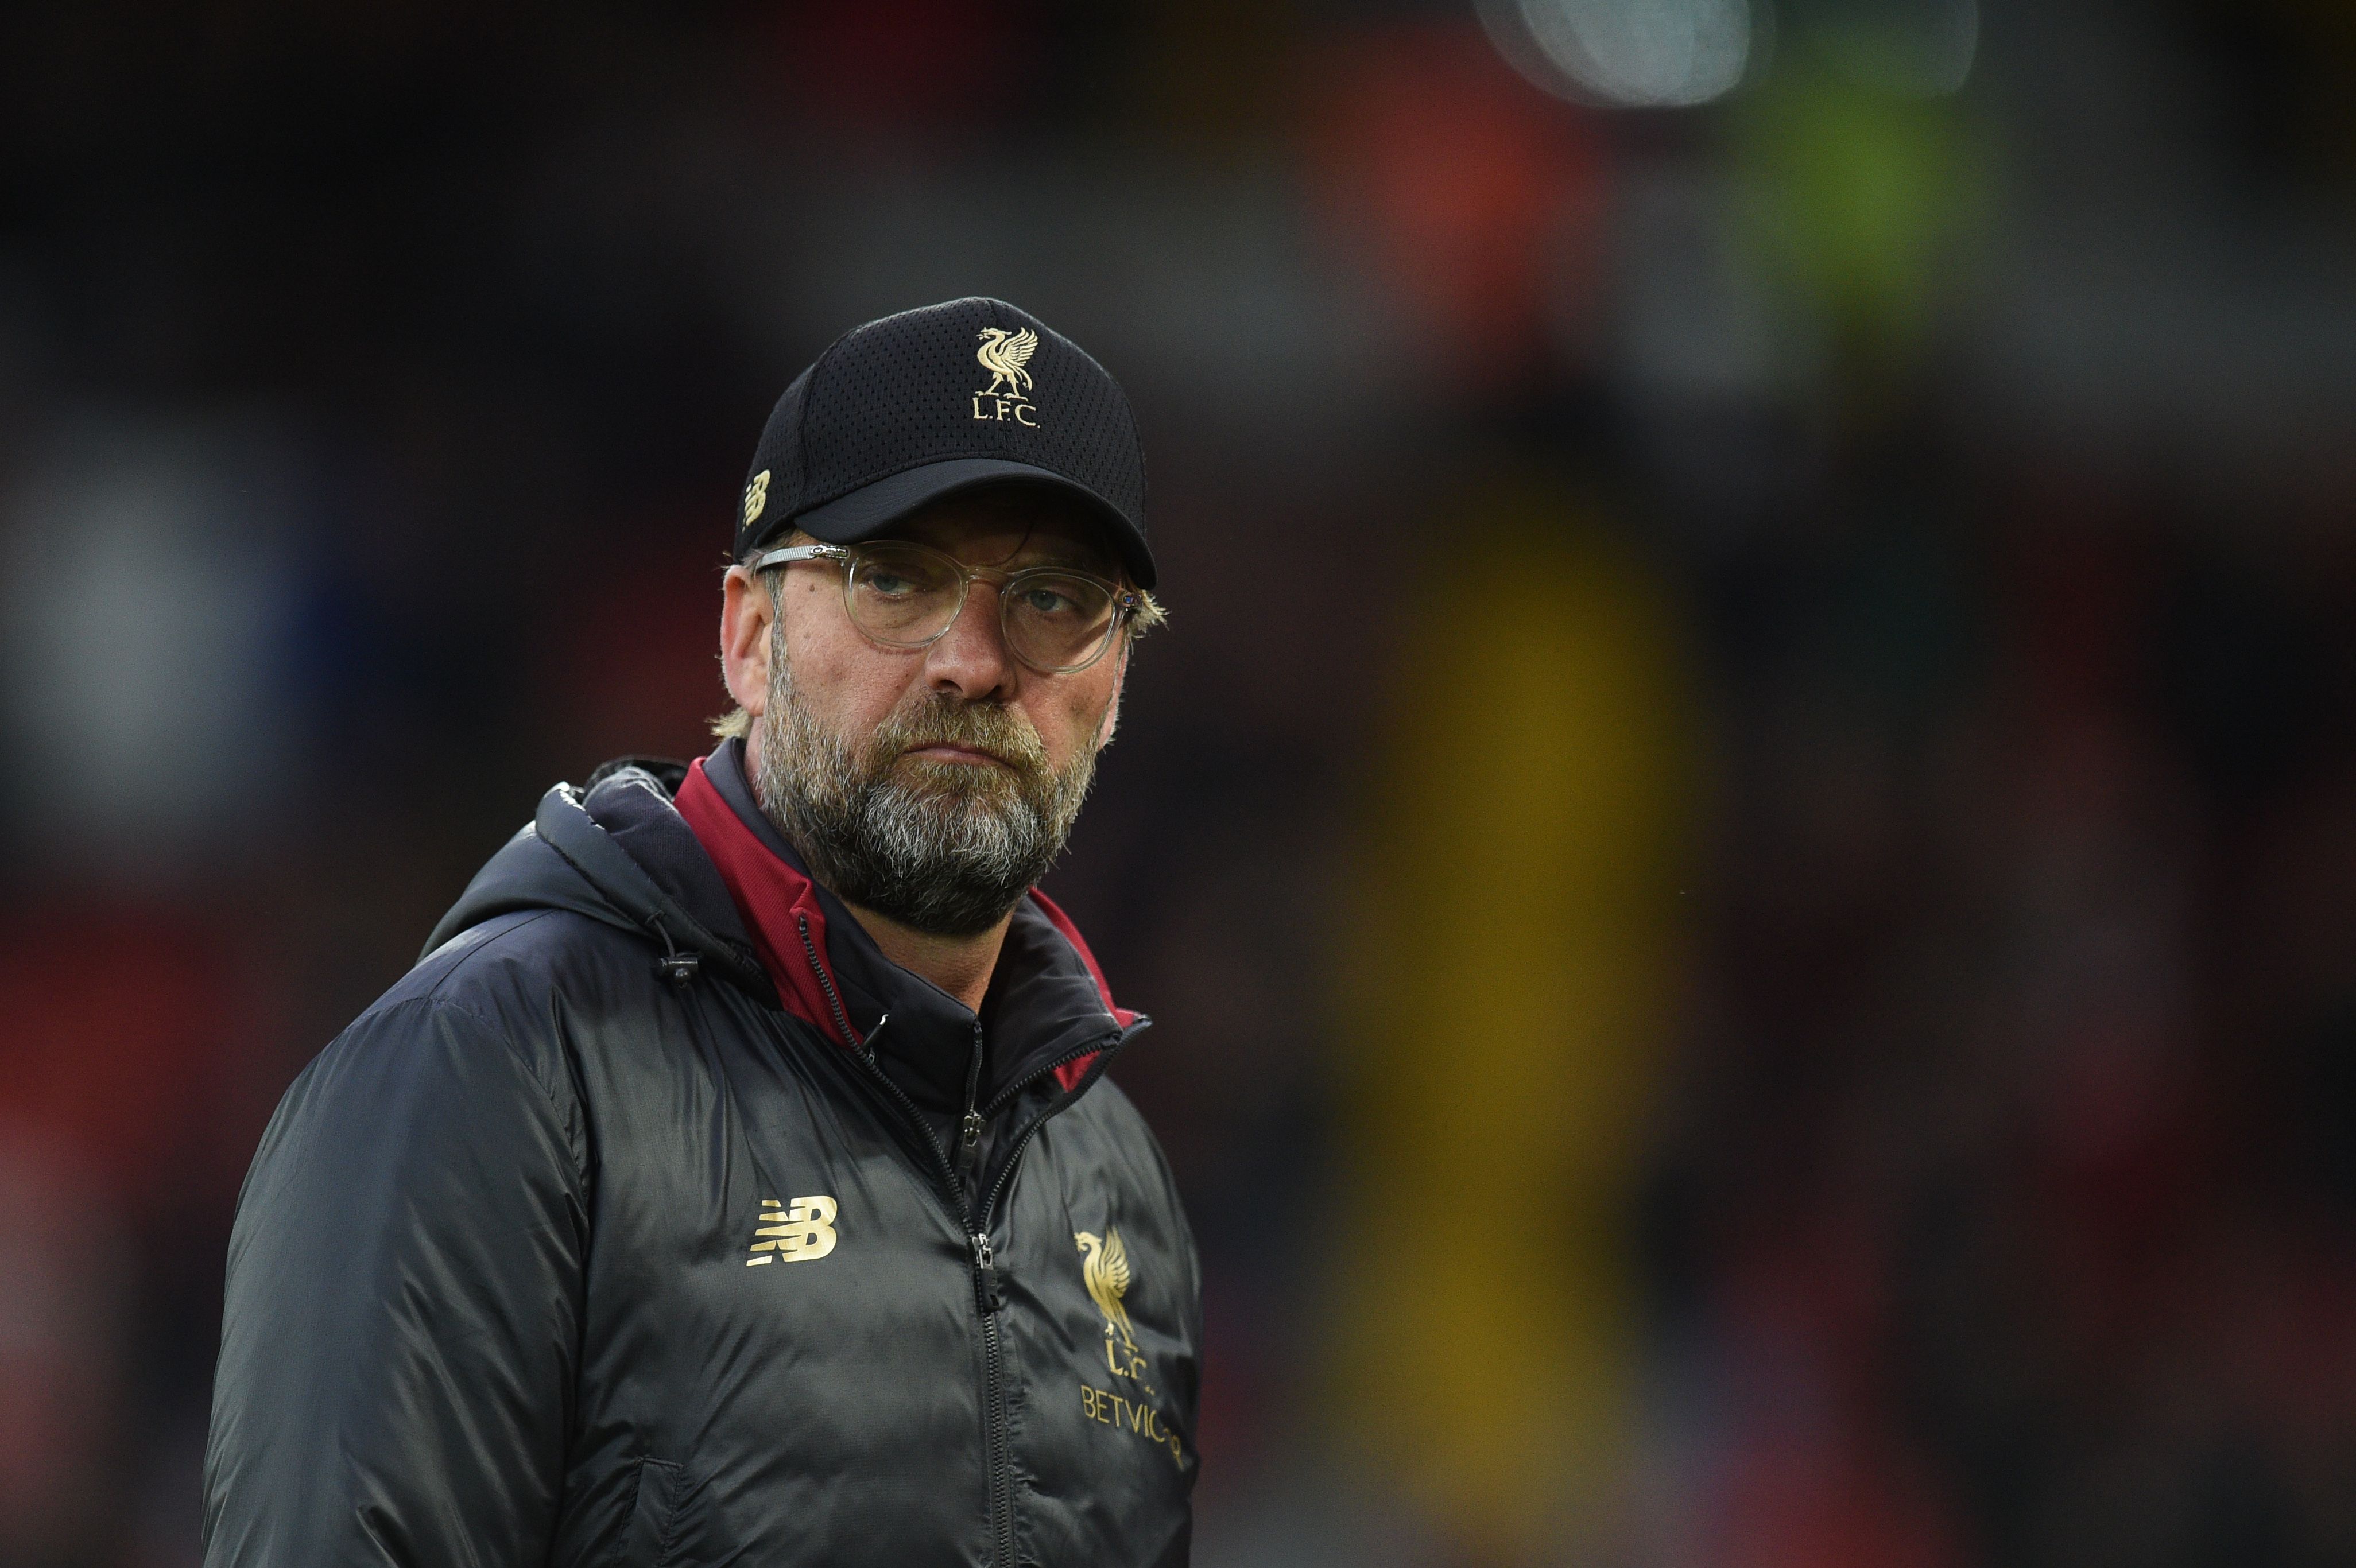 El entrenador alemán del Liverpool, Jurgen Klopp, confía en lograr la clasificación a la final de la Champions League. (Foto Prensa Libre: AFP)